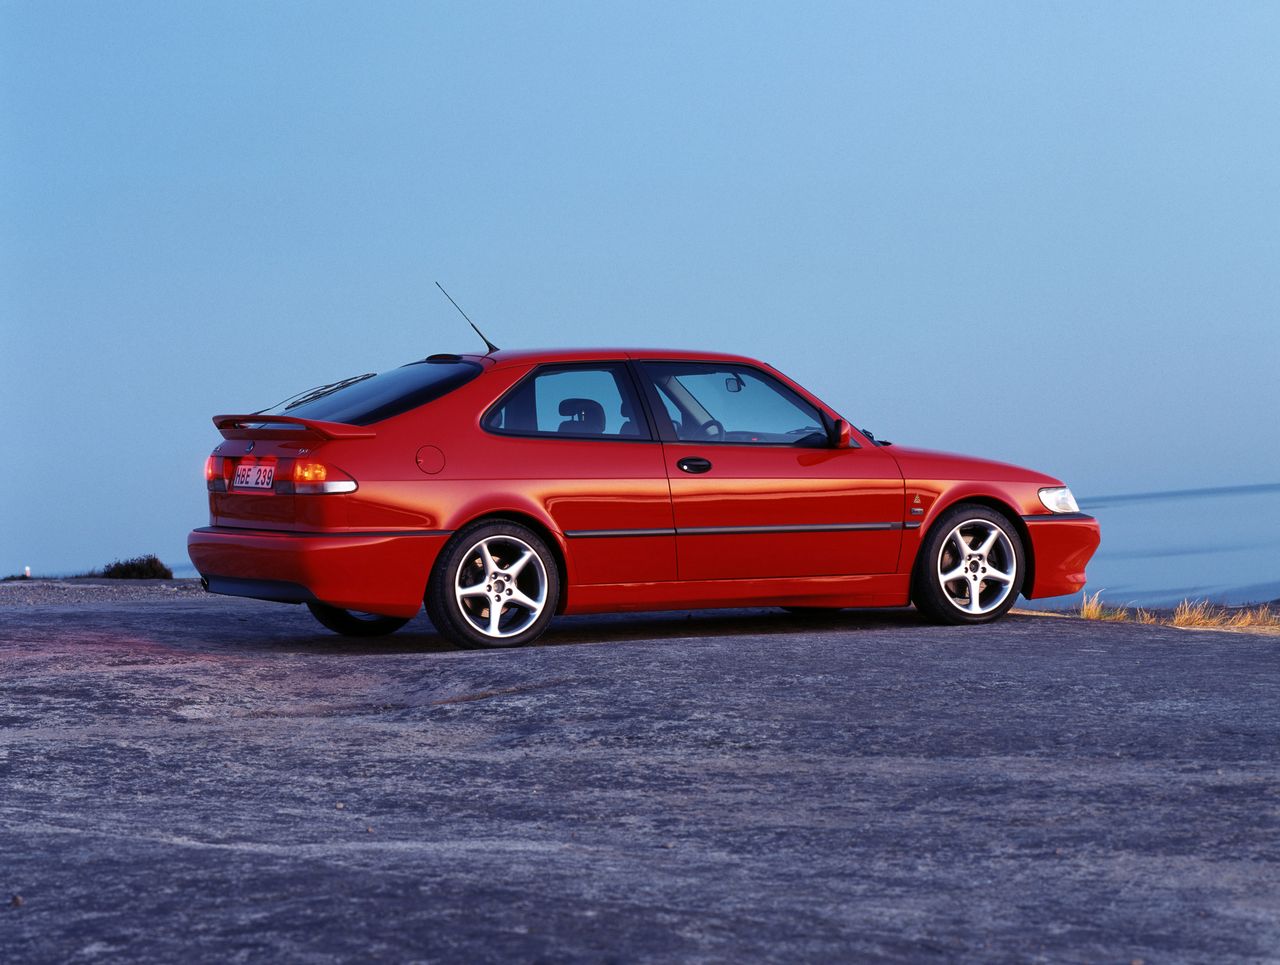 Nie tylko Saab jest już tylko wspomnieniem. 20 lat temu można było kupić auta jeszcze 6 innych marek, których już nie ma.